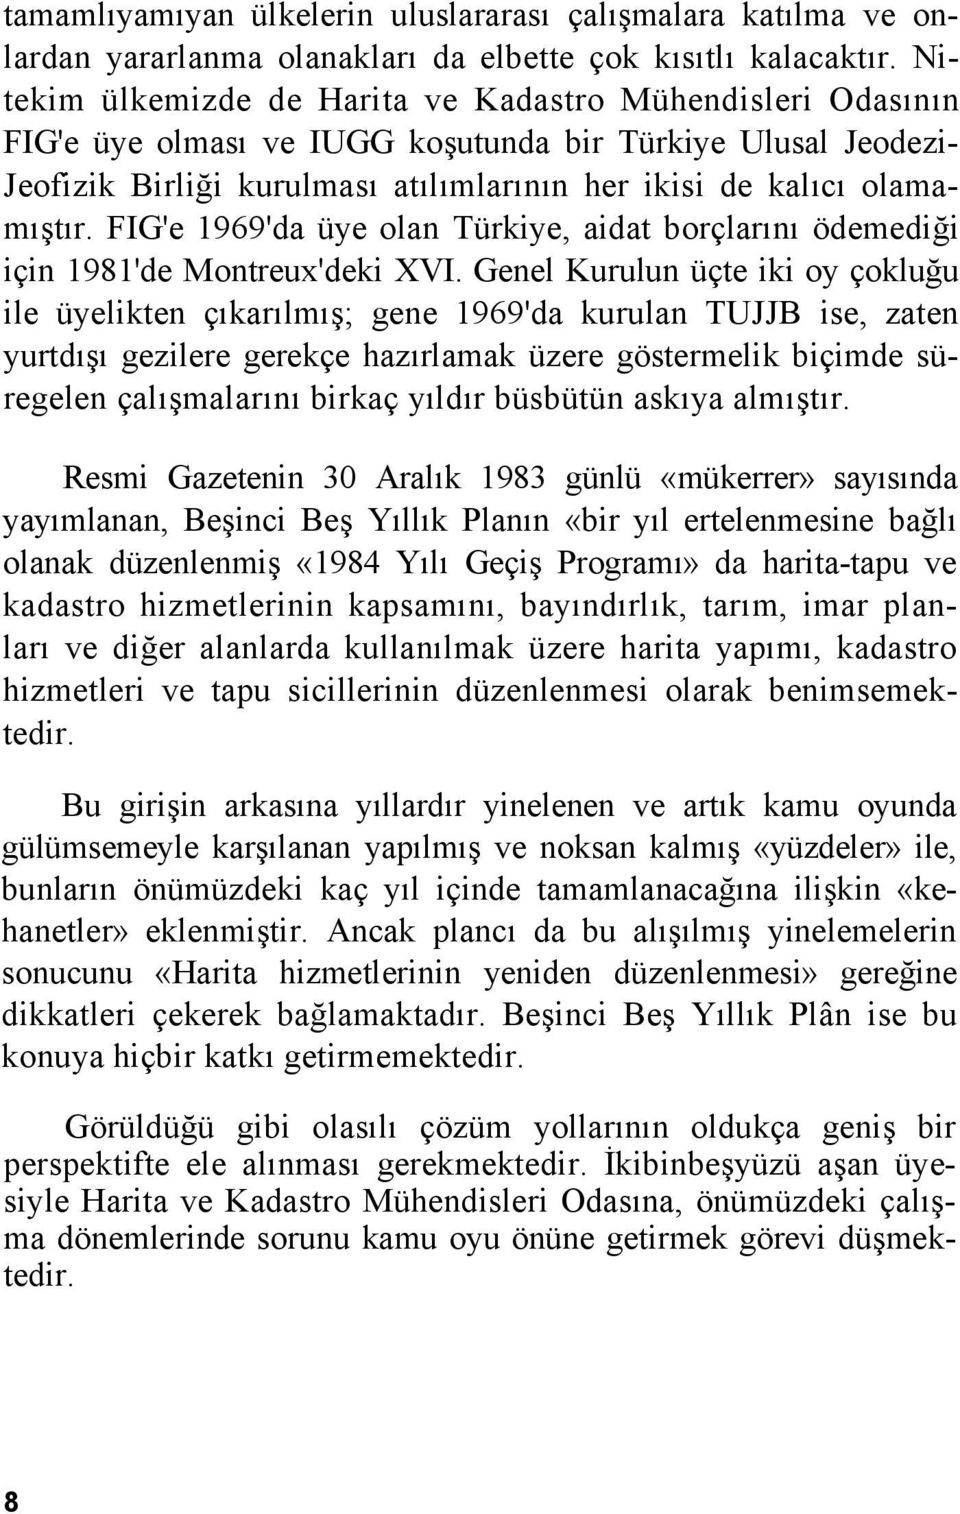 FIG'e 1969'da üye olan Türkiye, aidat borçlarını ödemediği için 1981'de Montreux'deki XVI.